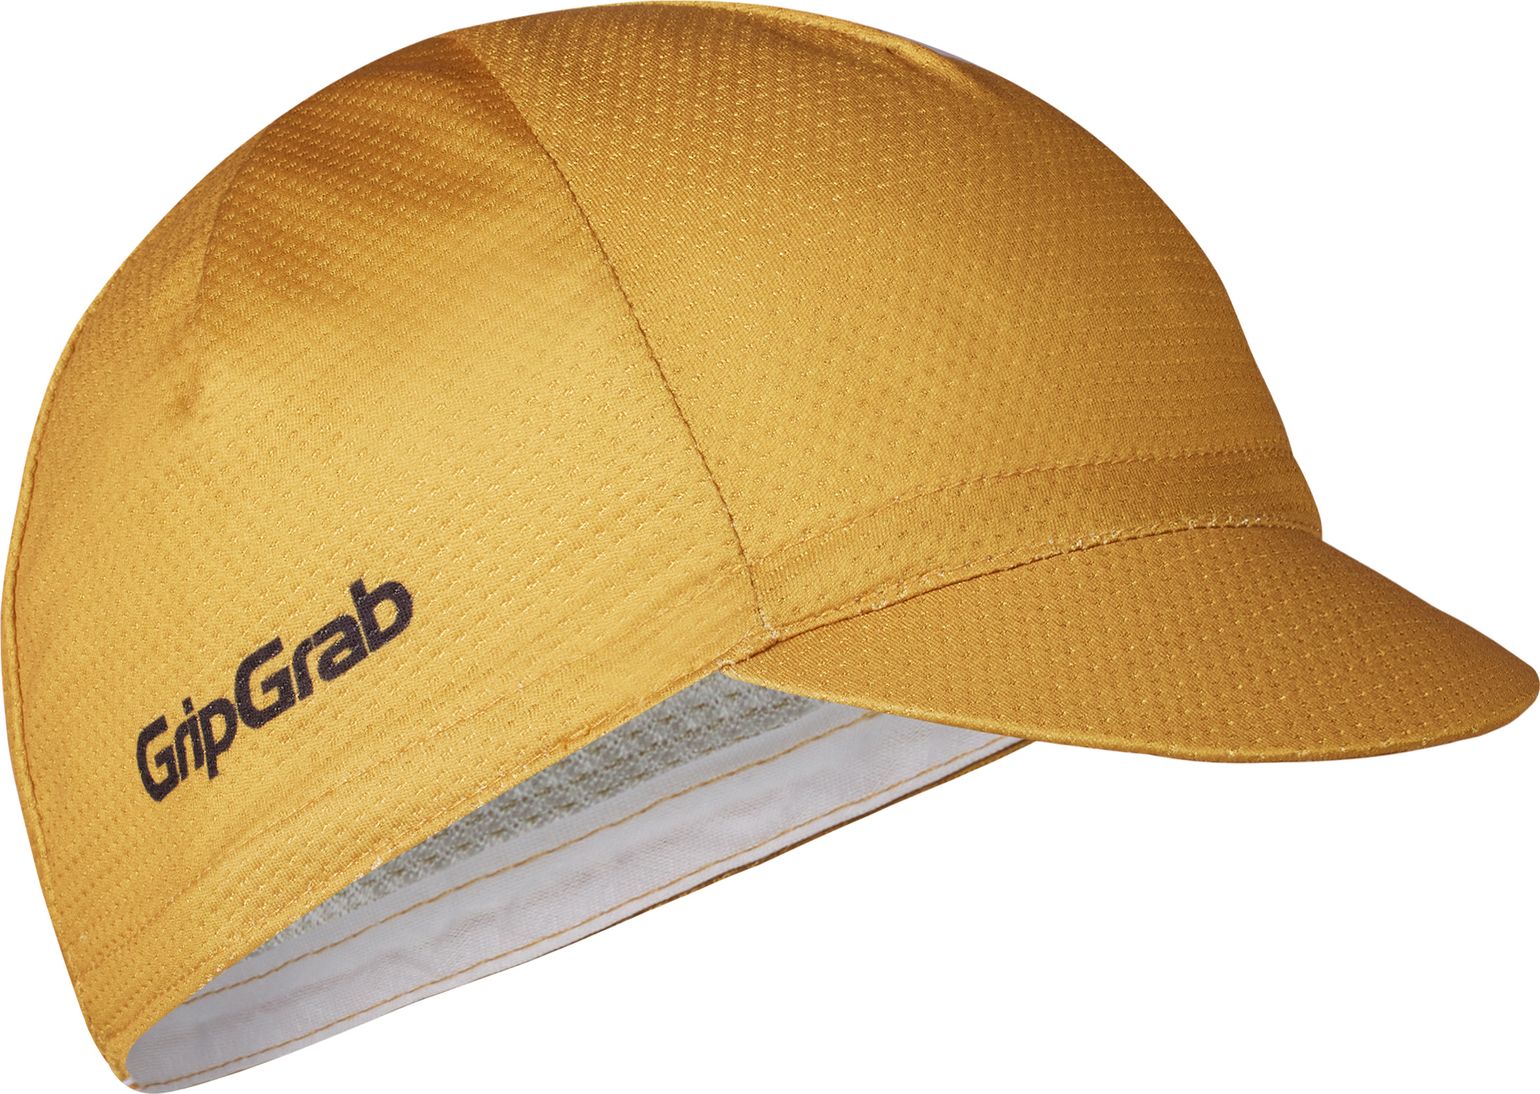 Gripgrab Lightweight Summer Cycling Cap Mustard Yellow